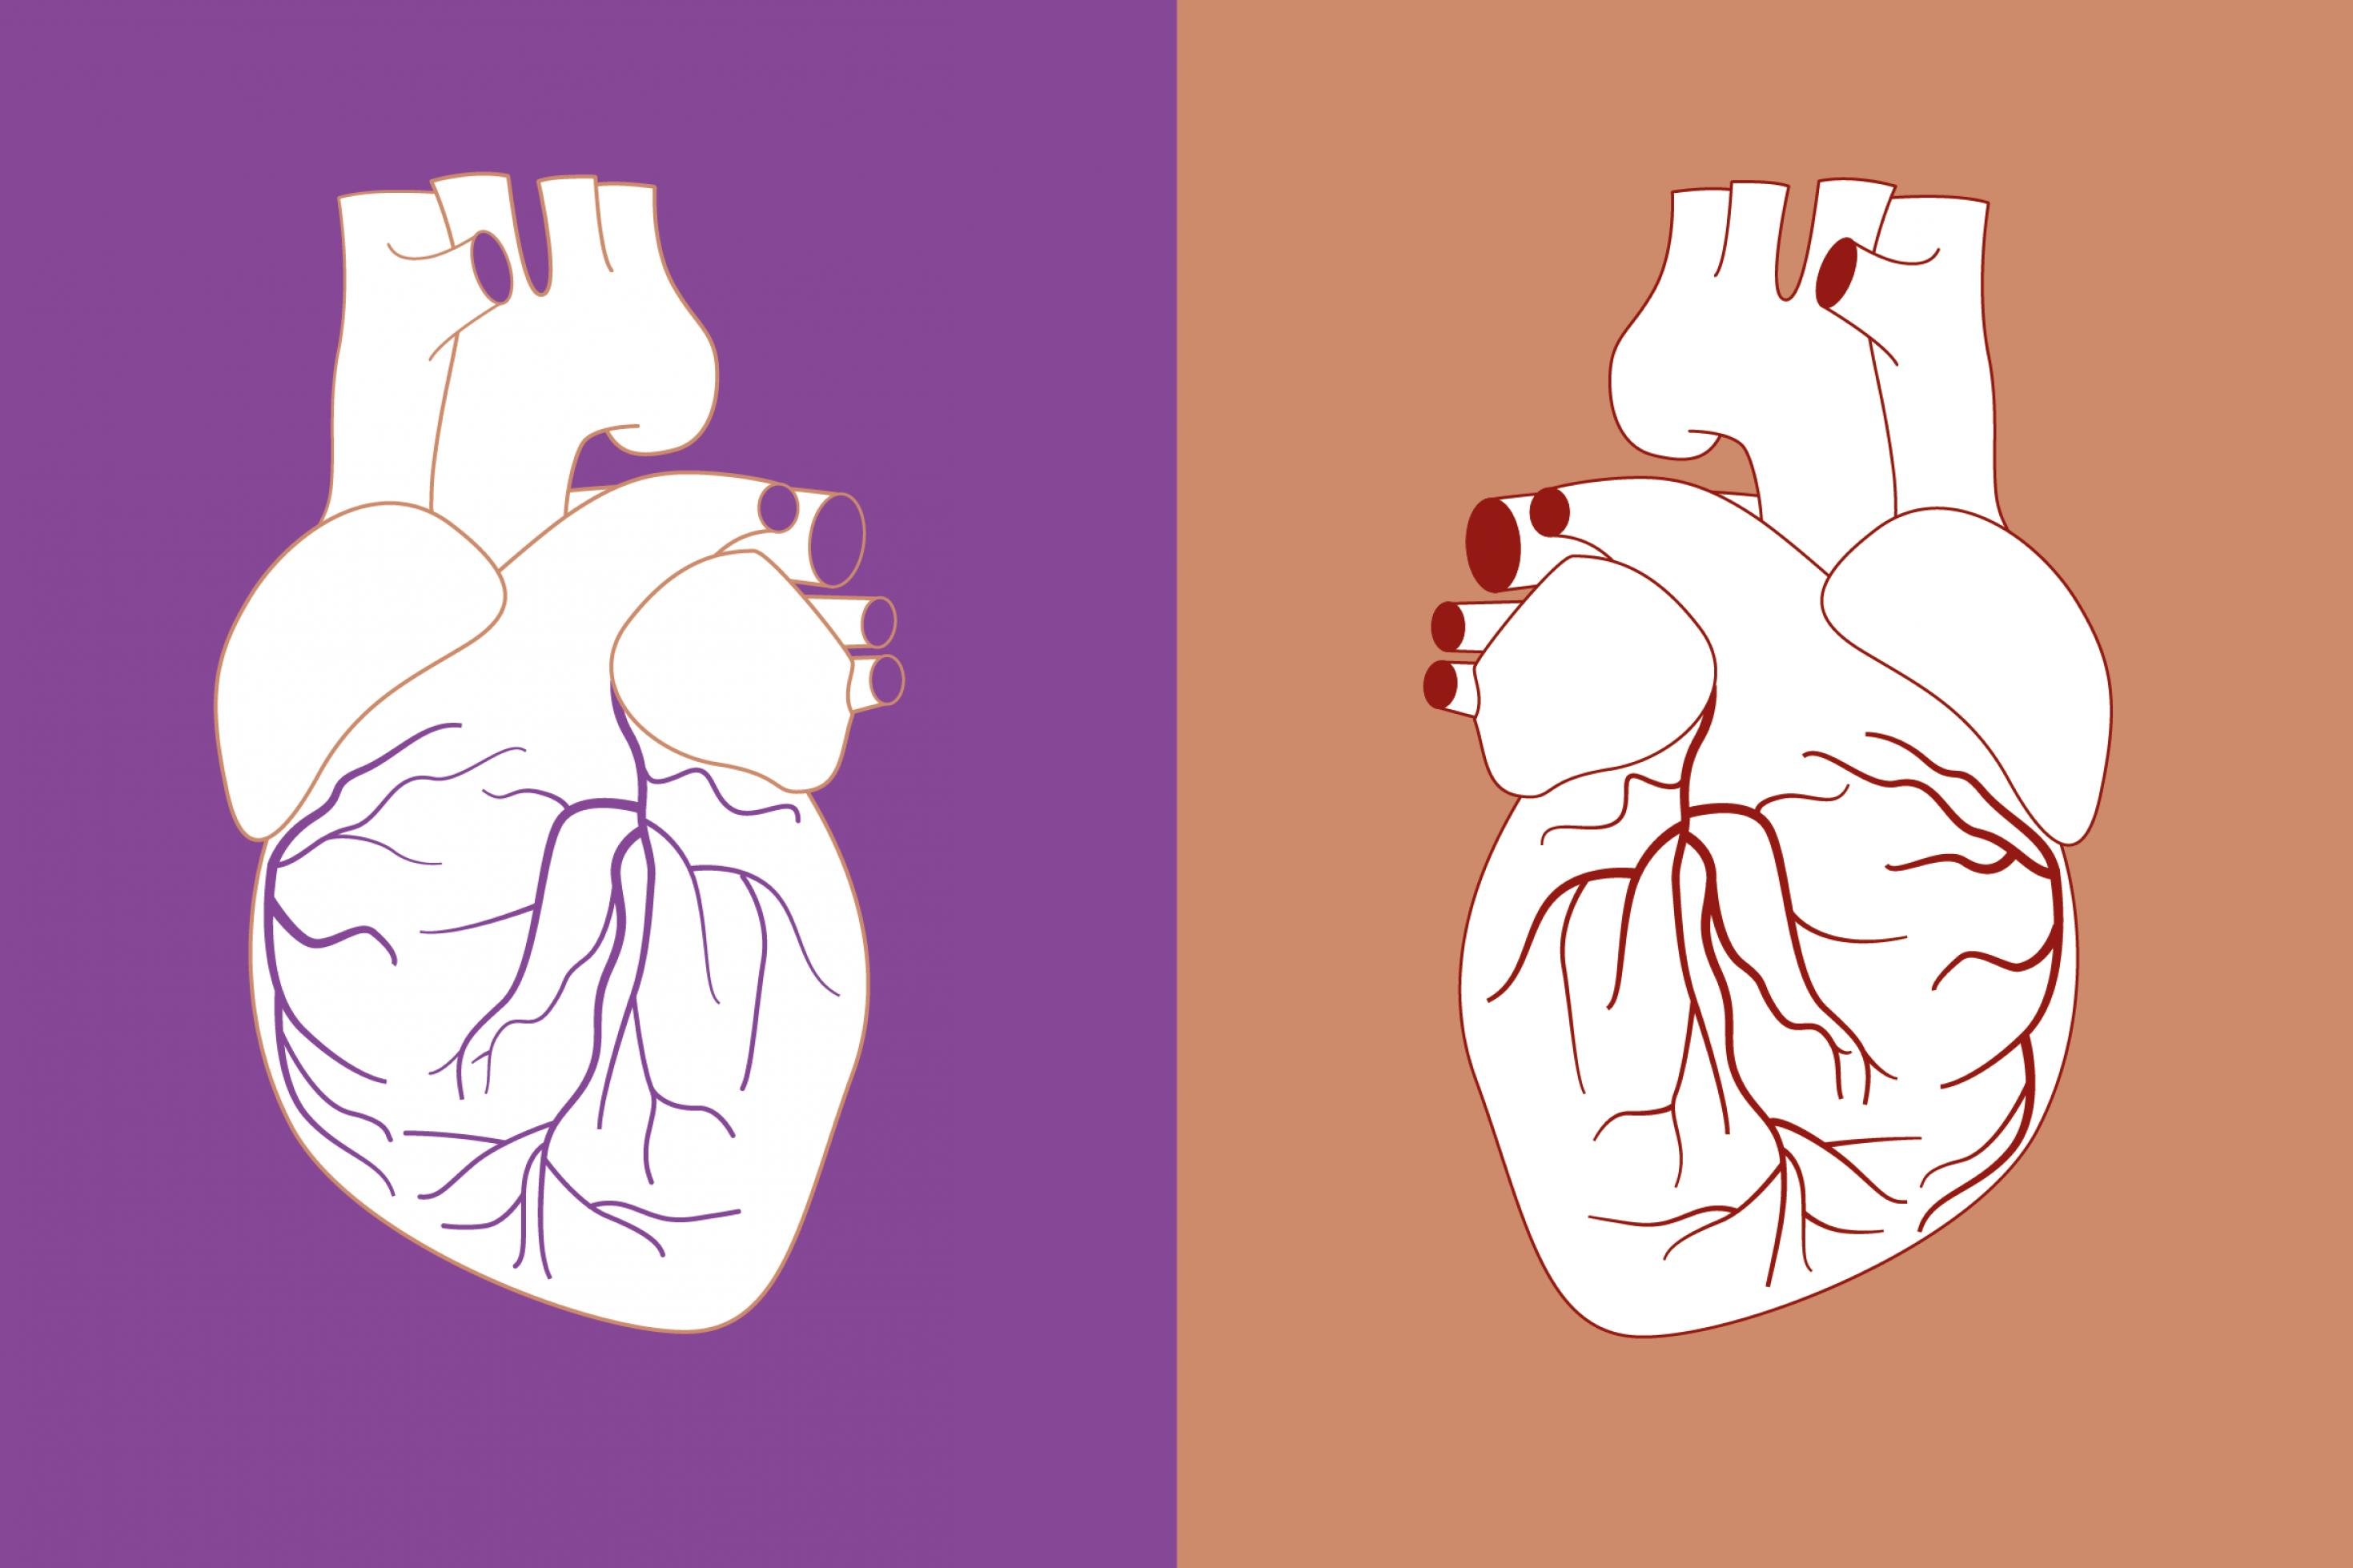 Das Bild ist in eine linke und eine rechte Hälfte geteilt. Links ist eine Zeichnung eines menschlichen Herzens vor einem lila Hintergrund zu sehen. Rechts ist die gleiche Zeichnung spiegelverkehrt vor einem beigen Hintergrund zu sehen.